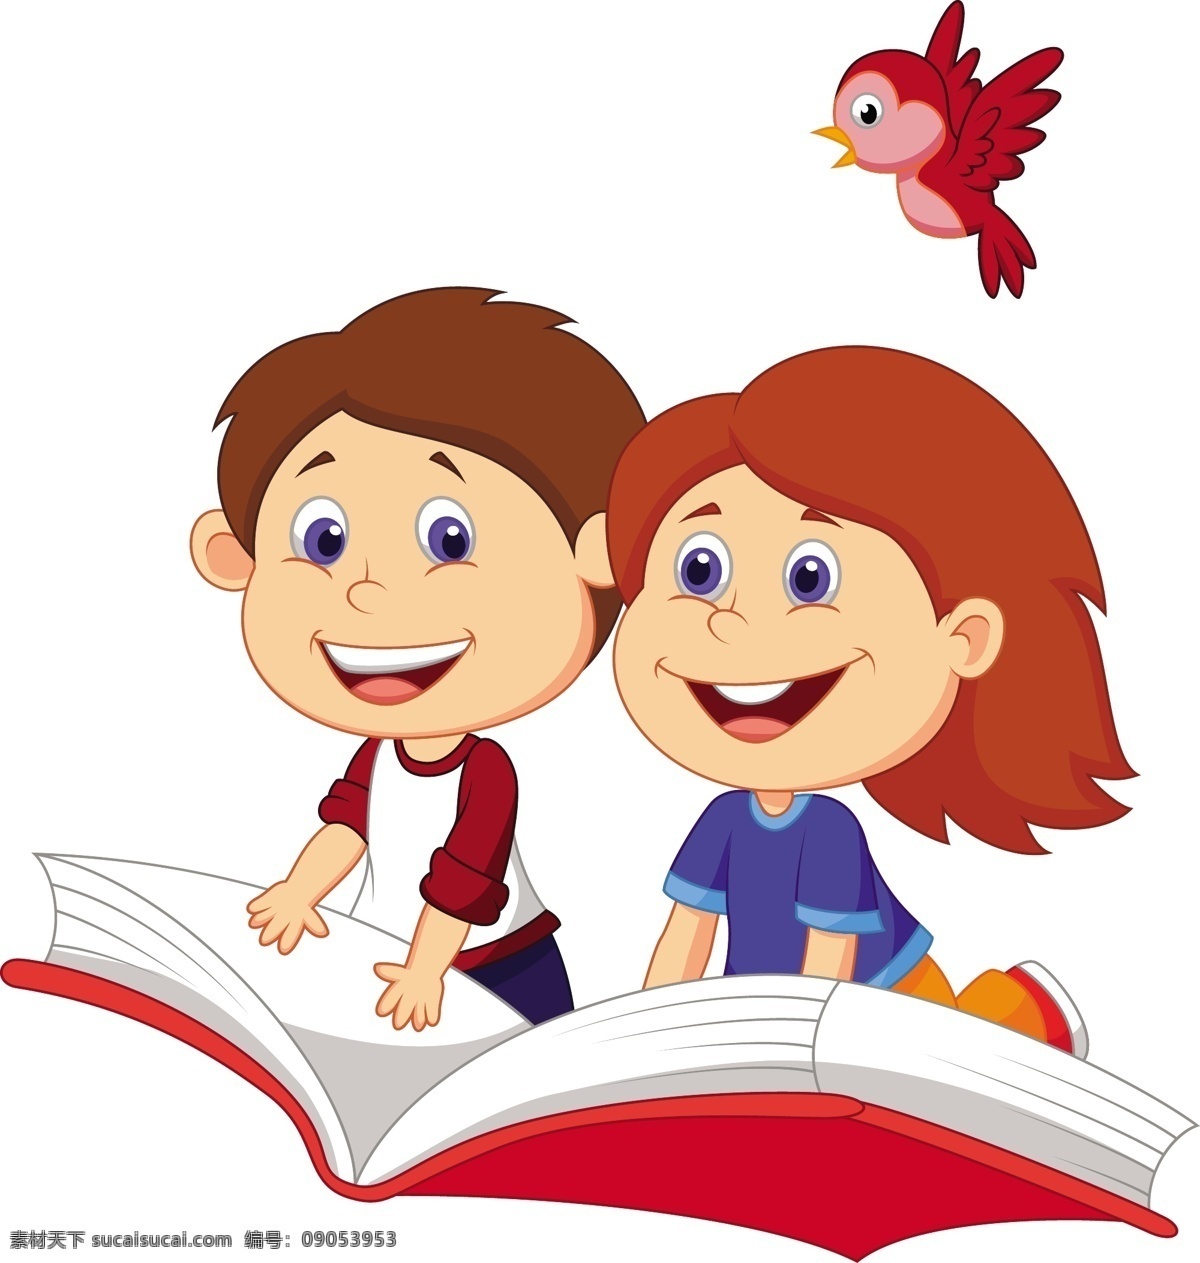 读书 教育 学习 阅读 书本 图书 education 图书logo 儿童教育 儿童读物